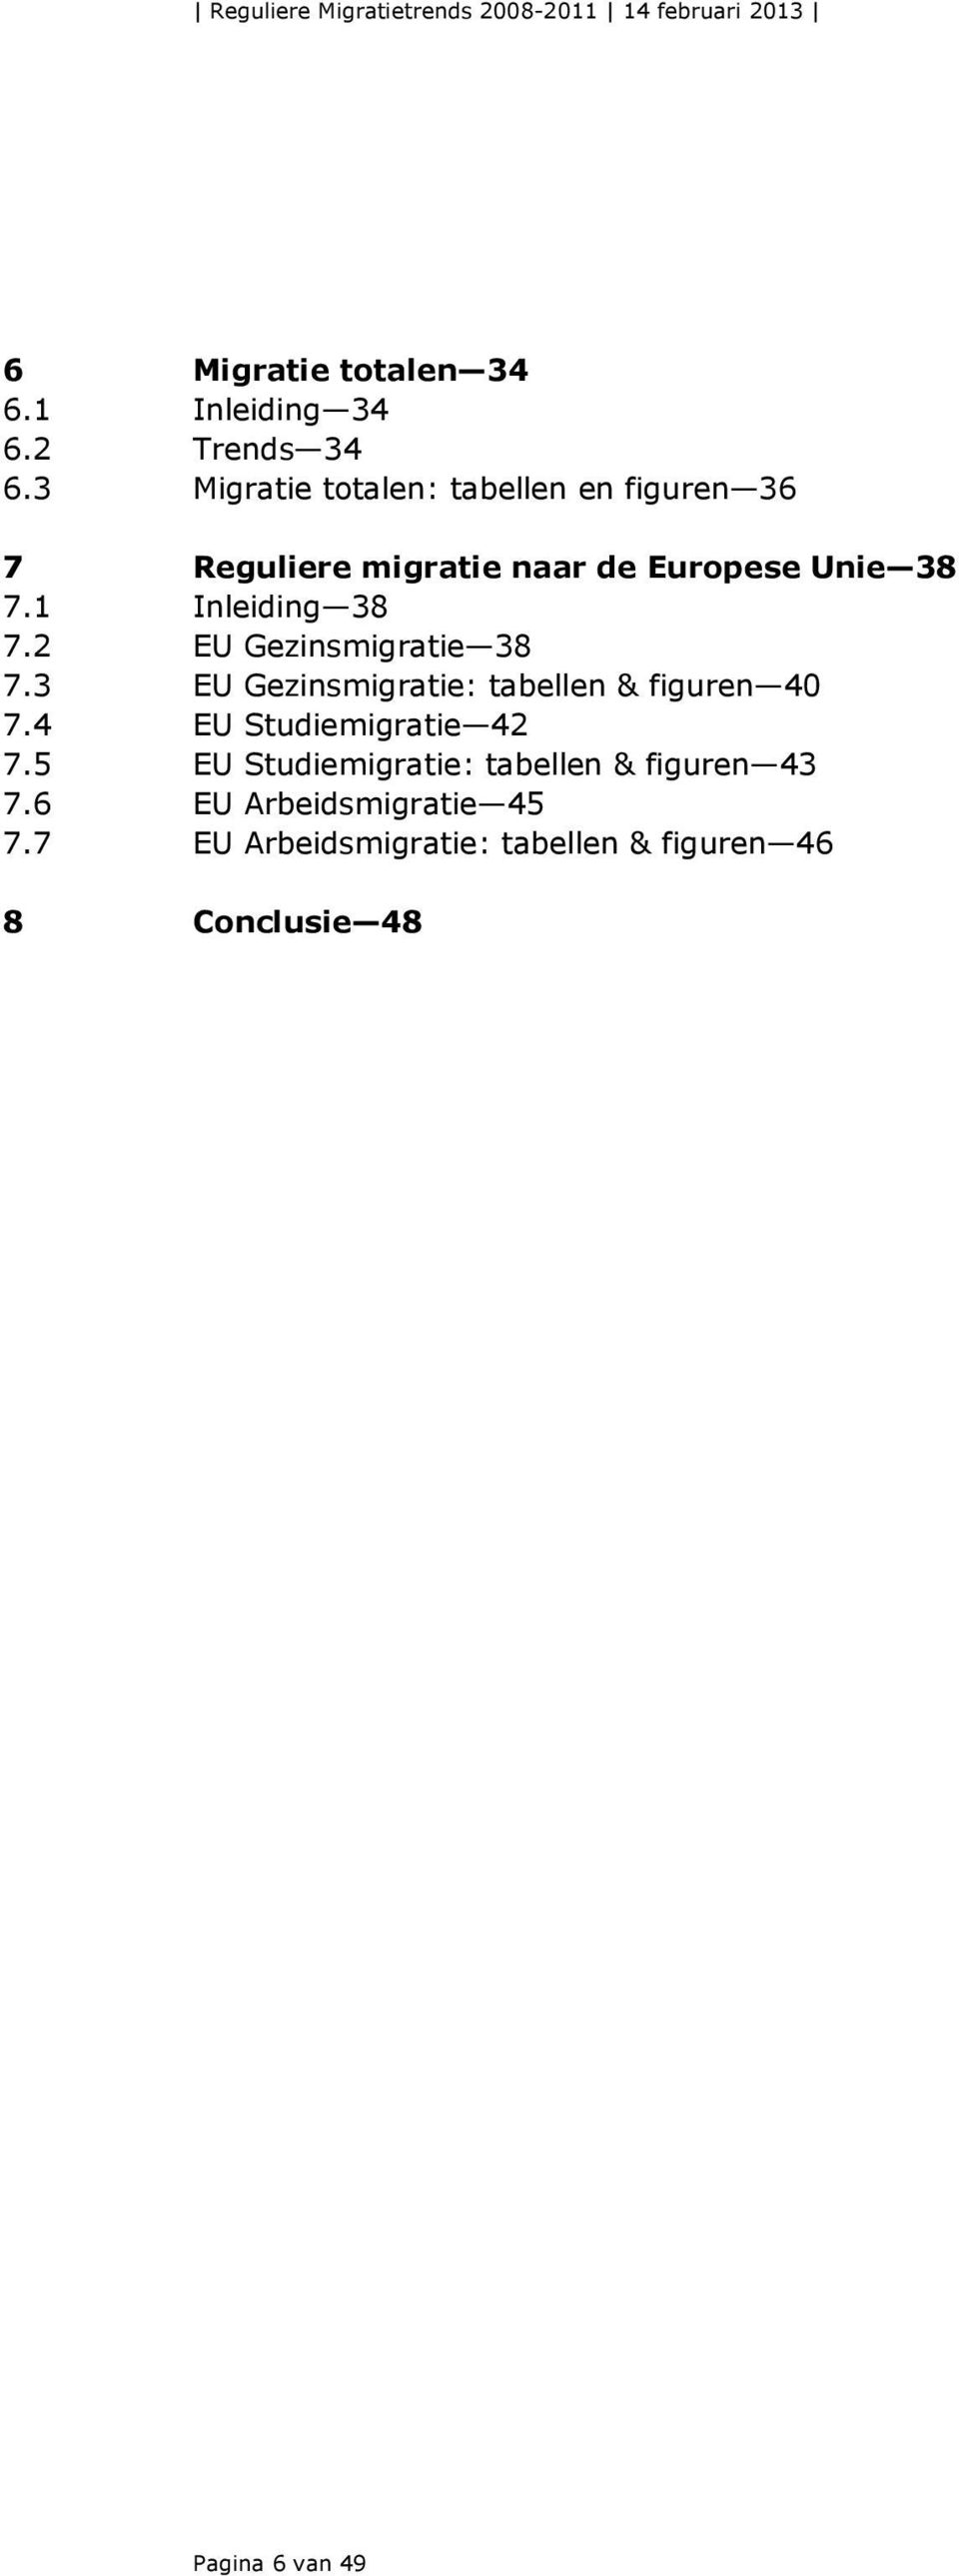 2 EU Gezinsmigratie 38 7.3 EU Gezinsmigratie: tabellen & figuren 4 7.4 EU Studiemigratie 42 7.